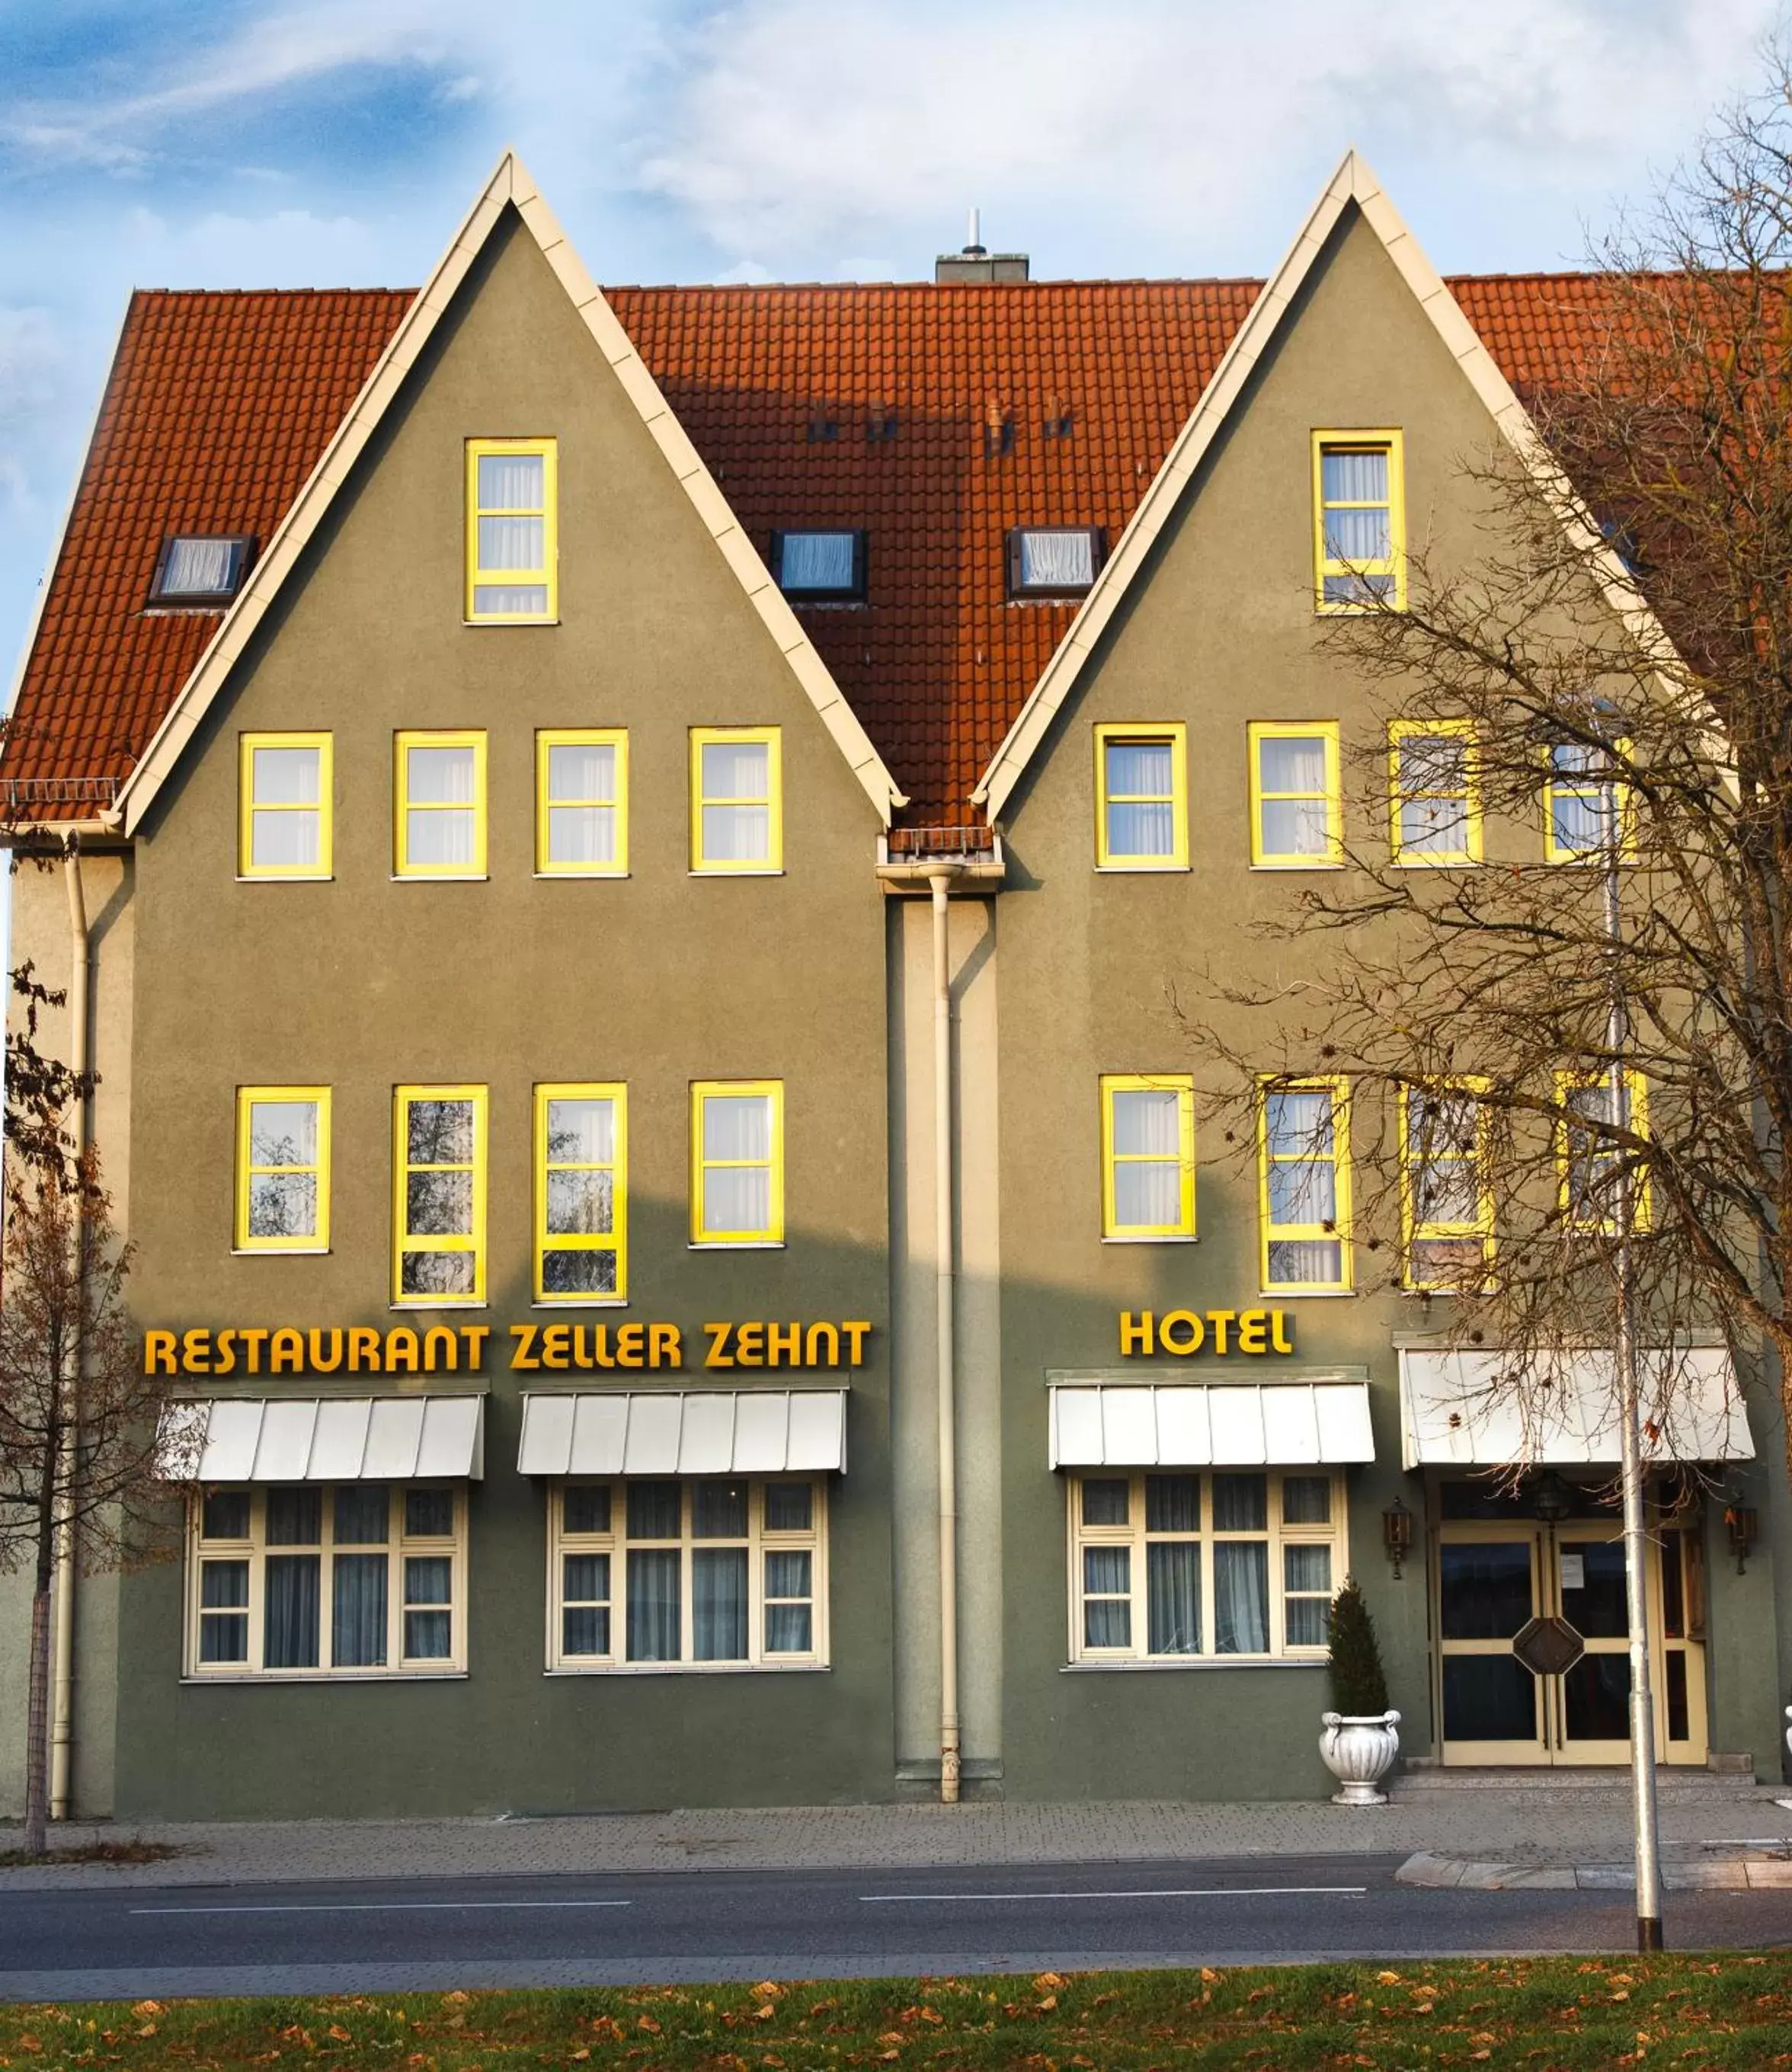 Property Building in Hotel Zeller Zehnt